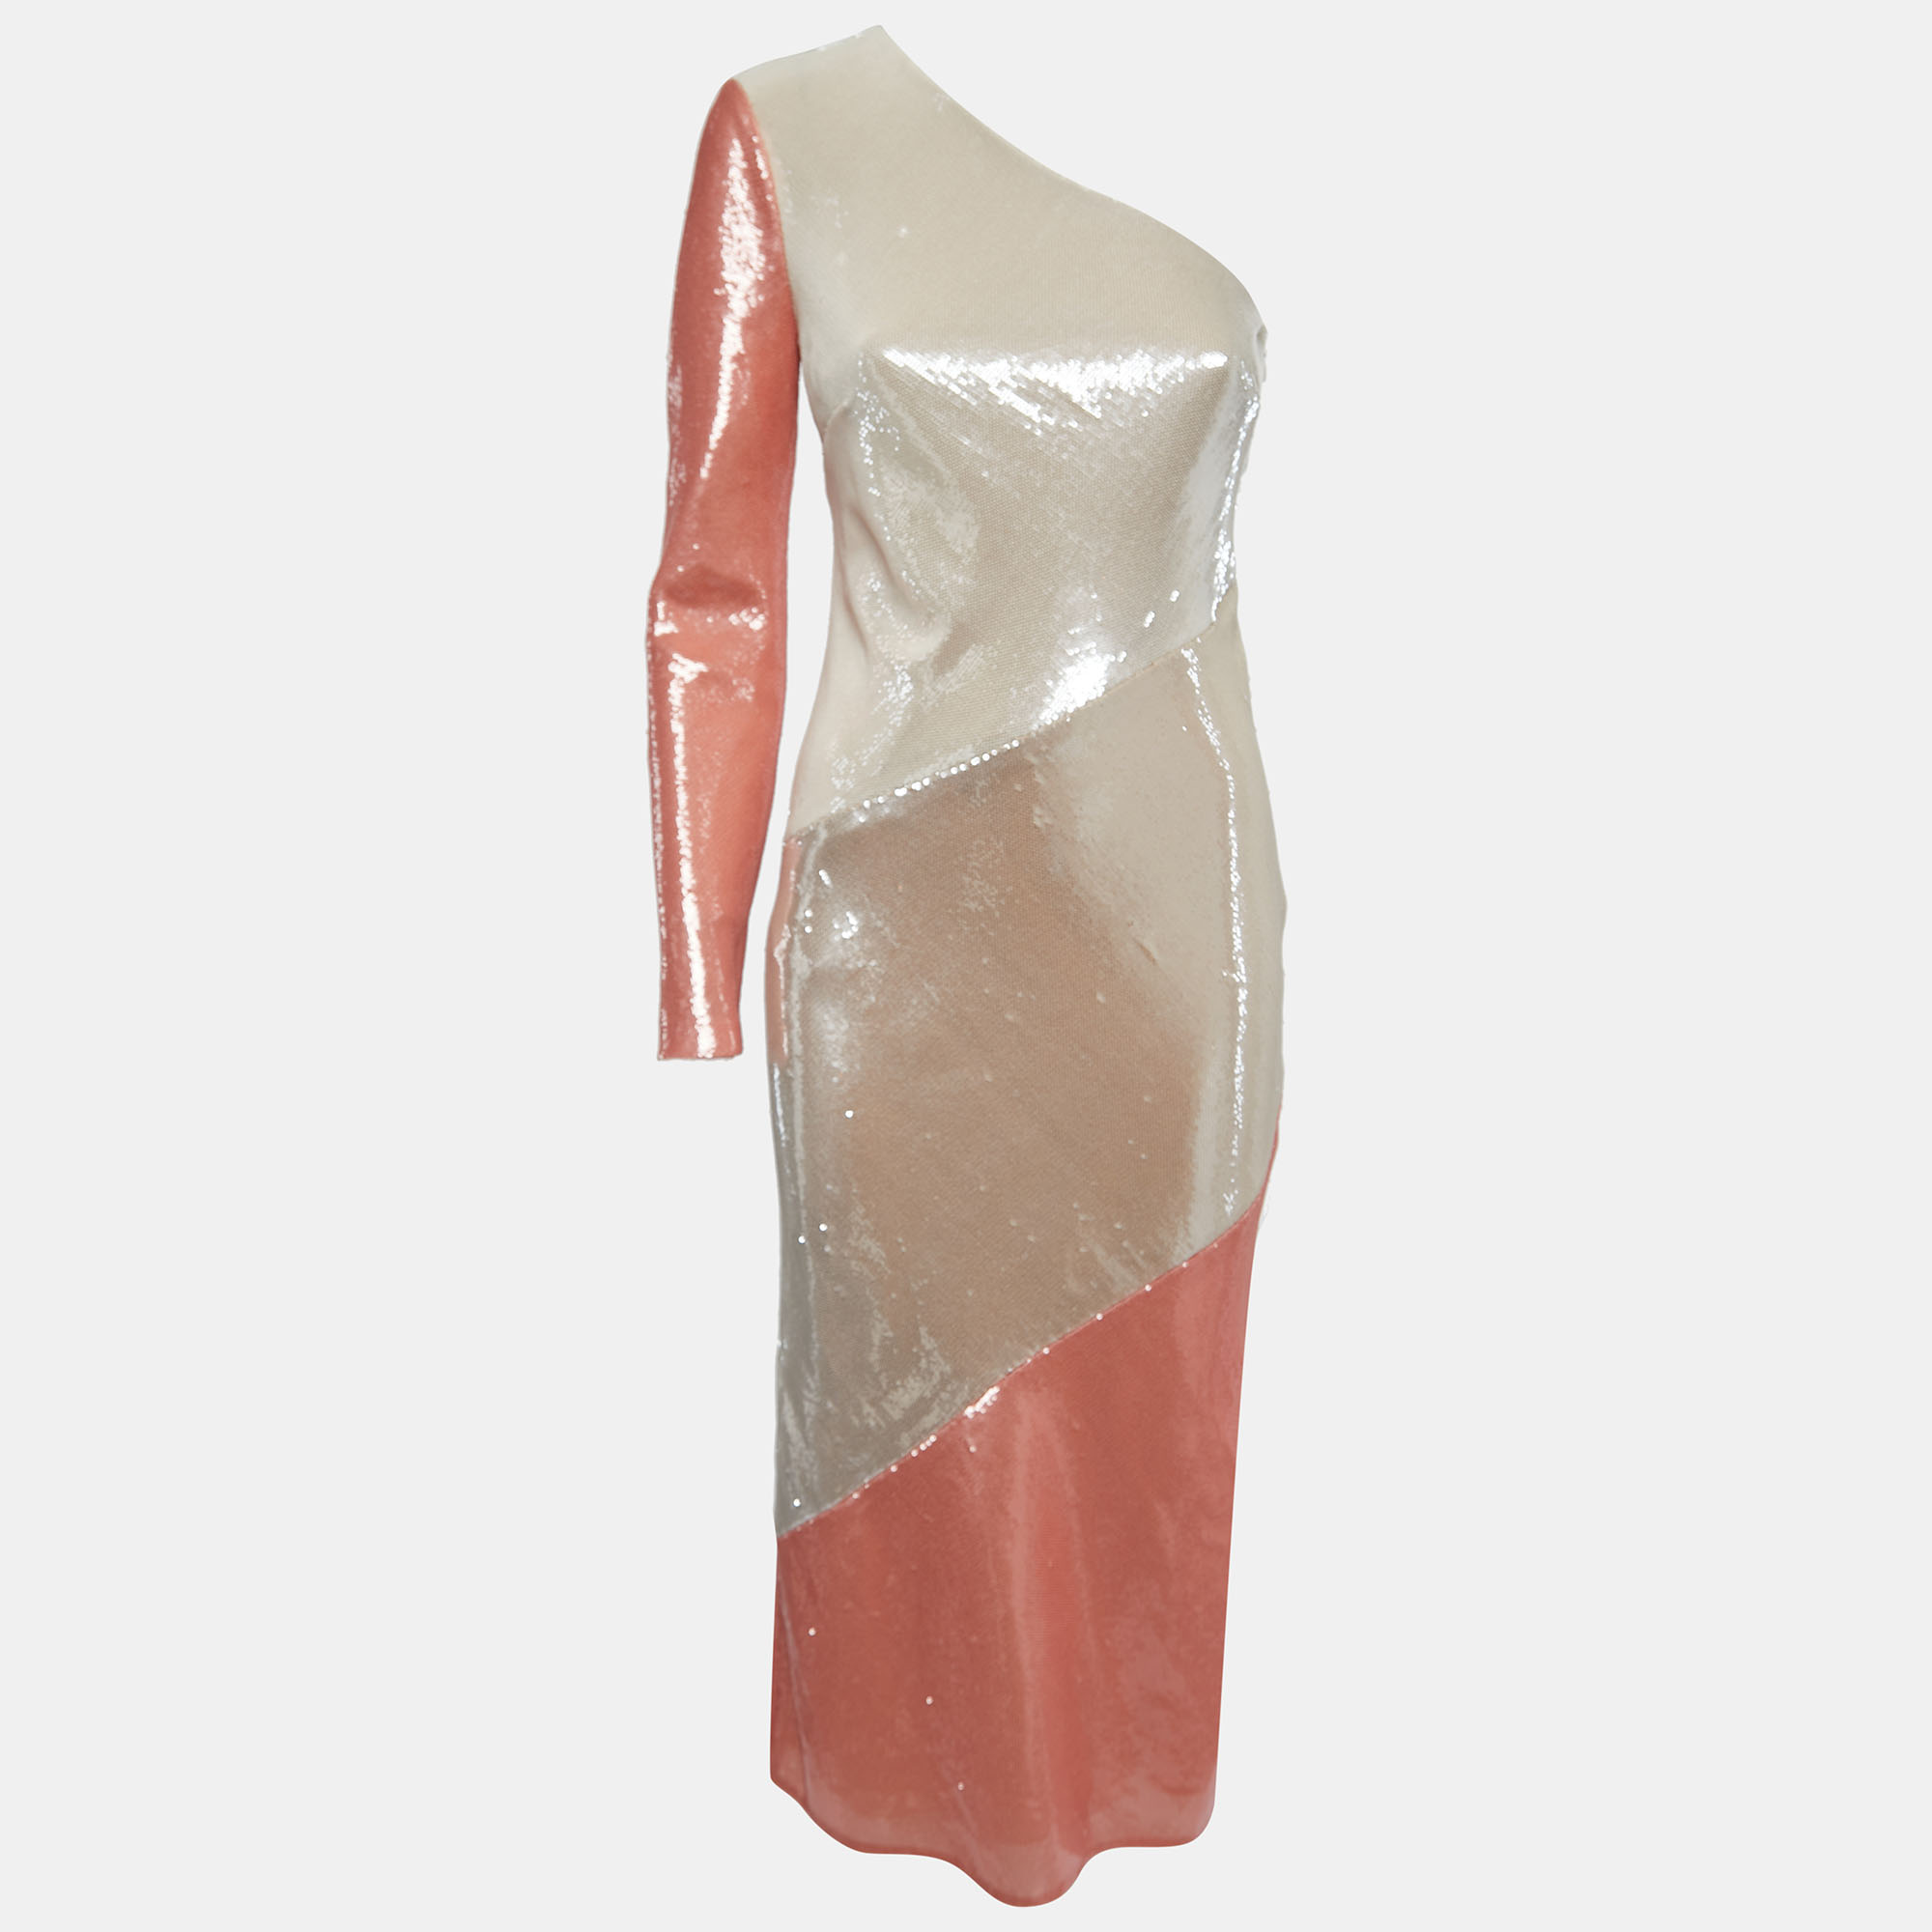 Diane von furstenberg off-white/light orange sequined silk one shoulder midi dress s